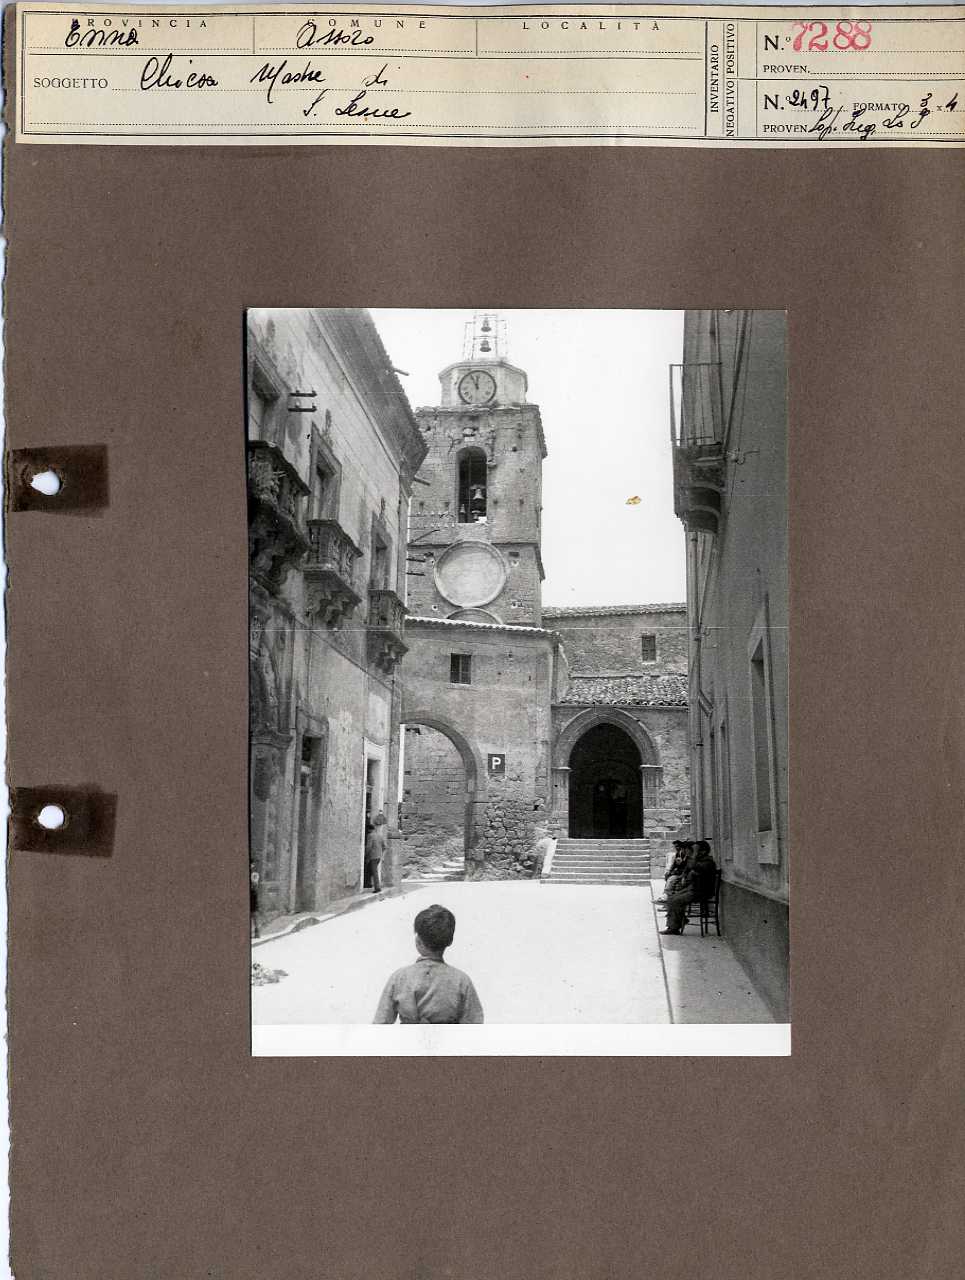 Sicilia - Enna <provincia> - Assoro - Chiese (positivo, elemento-parte componente, scheda di supporto) di Anonimo <1951 - 2000> (terzo quarto XX)